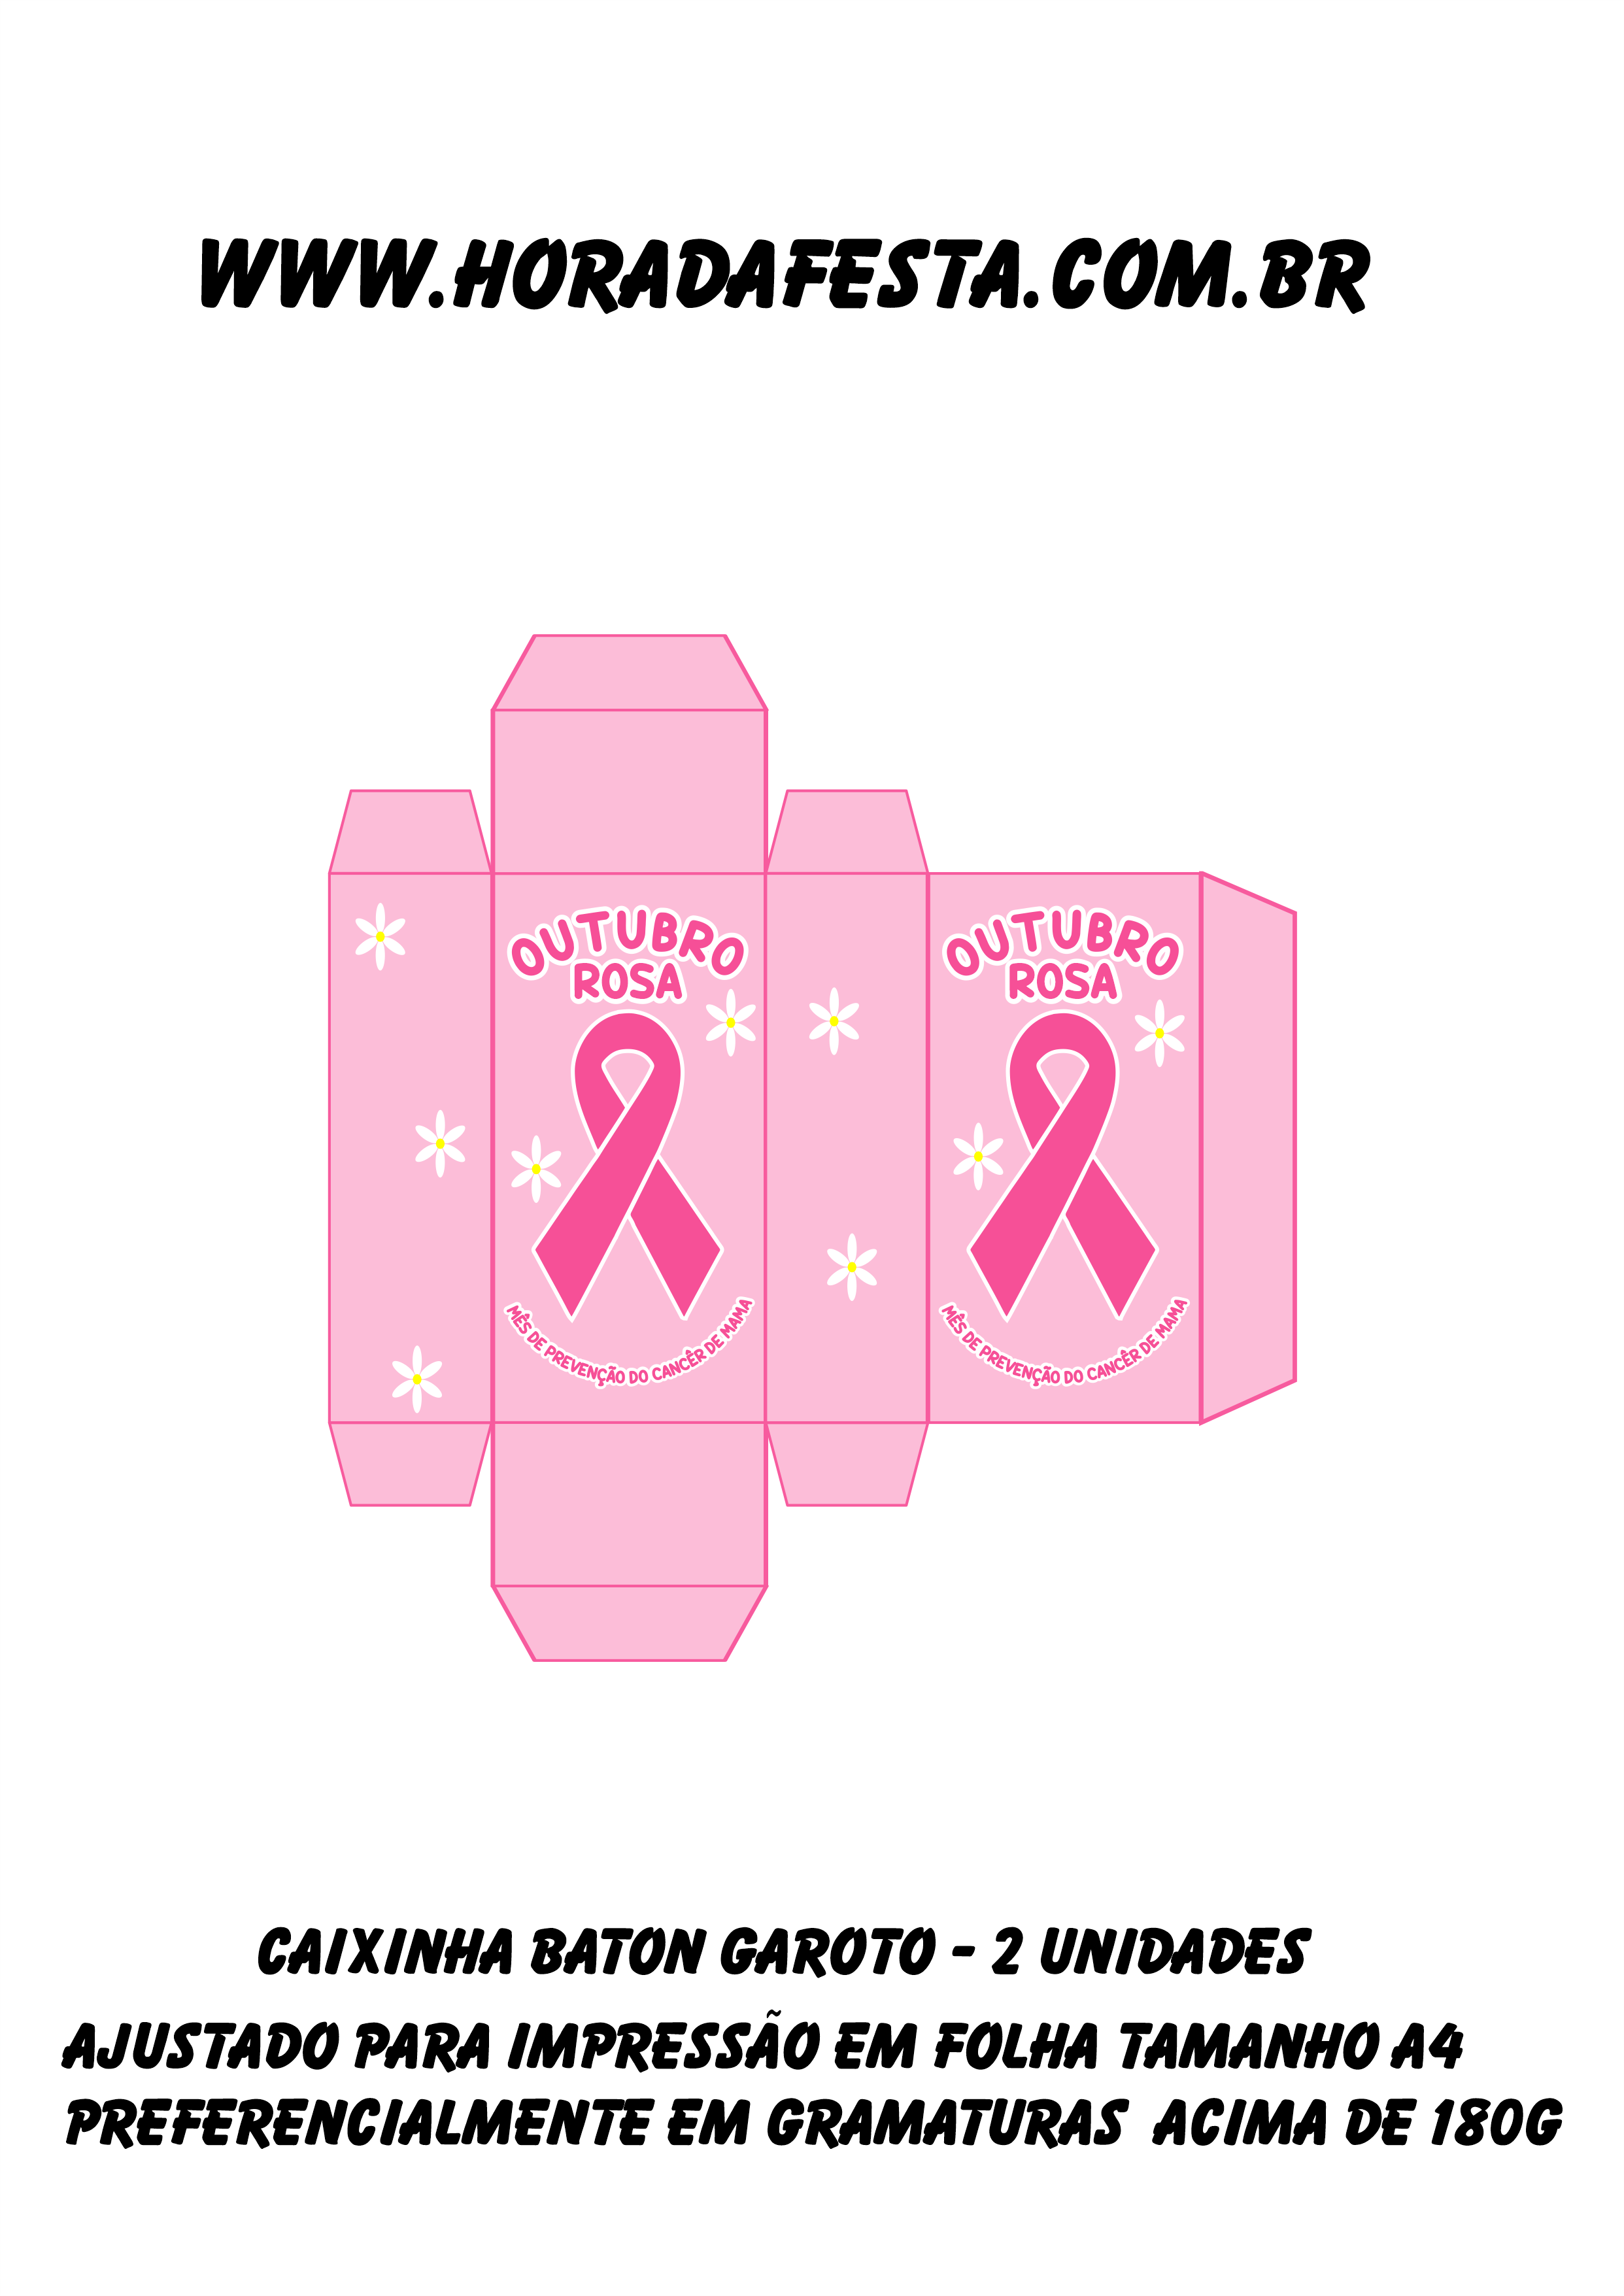 Outubro rosa mês de prevenção do câncer de mama caixinha baton garoto duplo mimo png